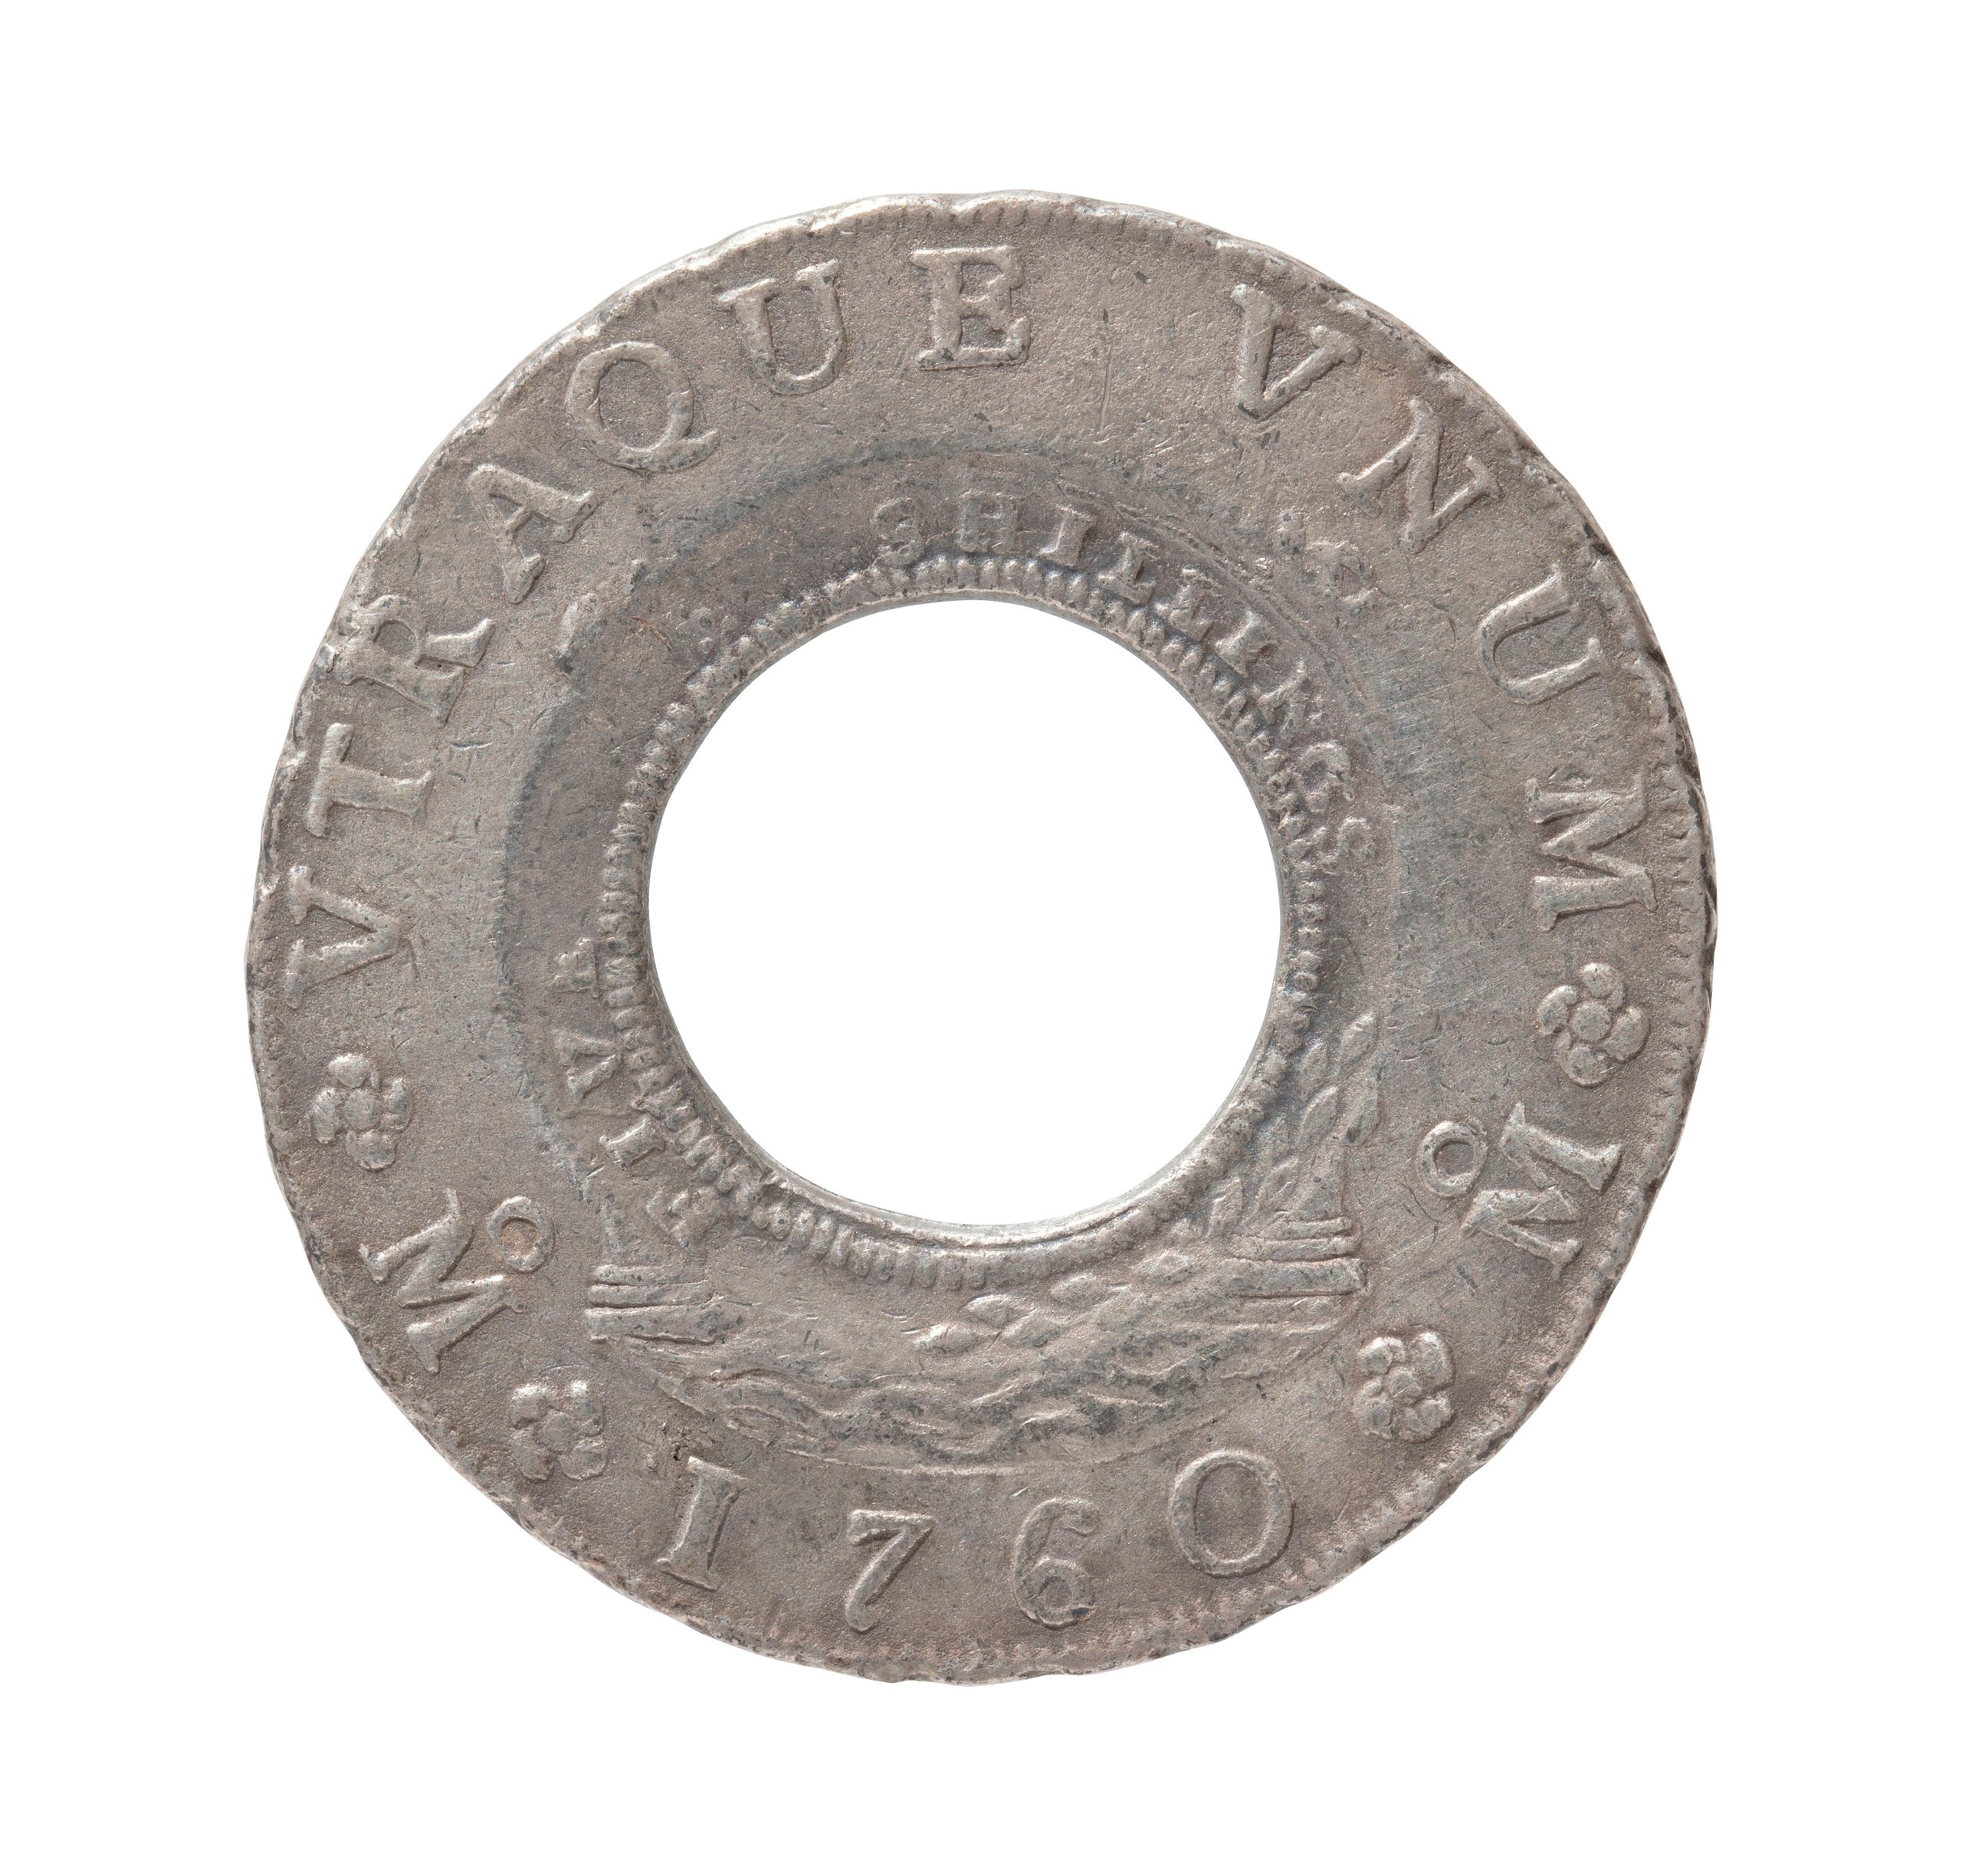 Replica Australian Holey Dollar coin